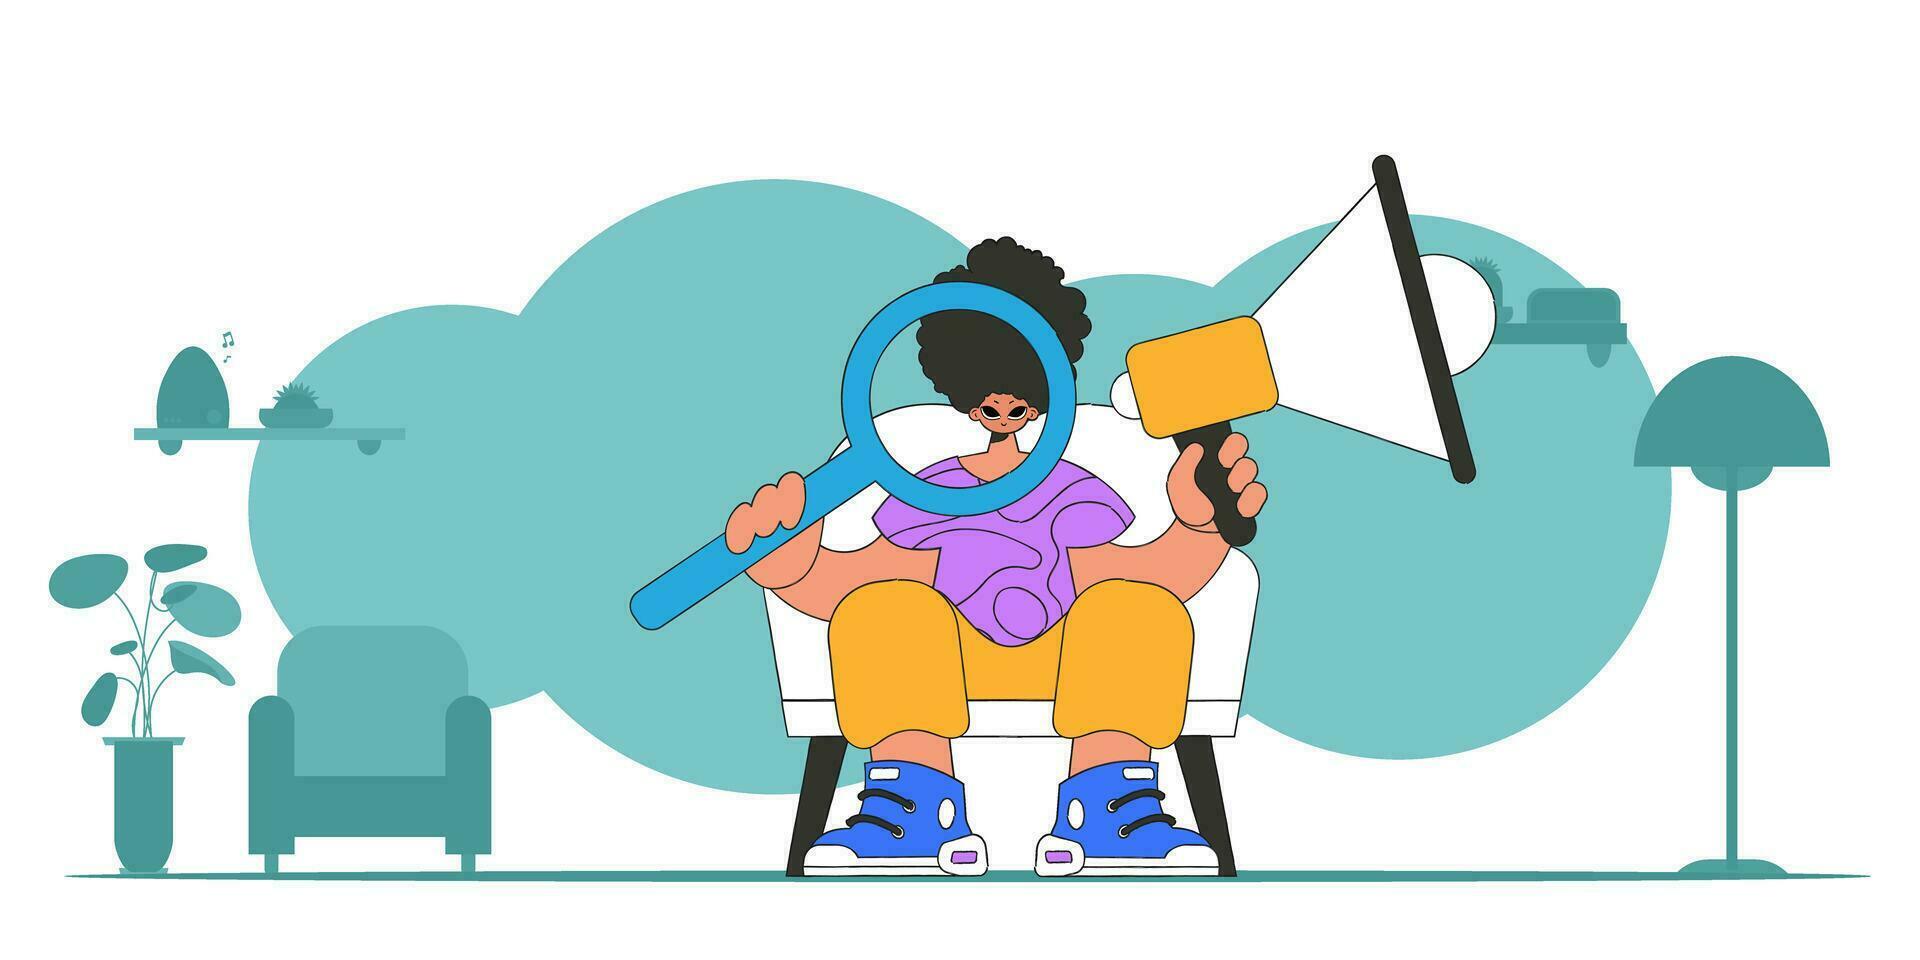 estilizado vector ilustración de un hora representante. un elegante hombre se sienta en un silla y sostiene un megáfono en su mano.